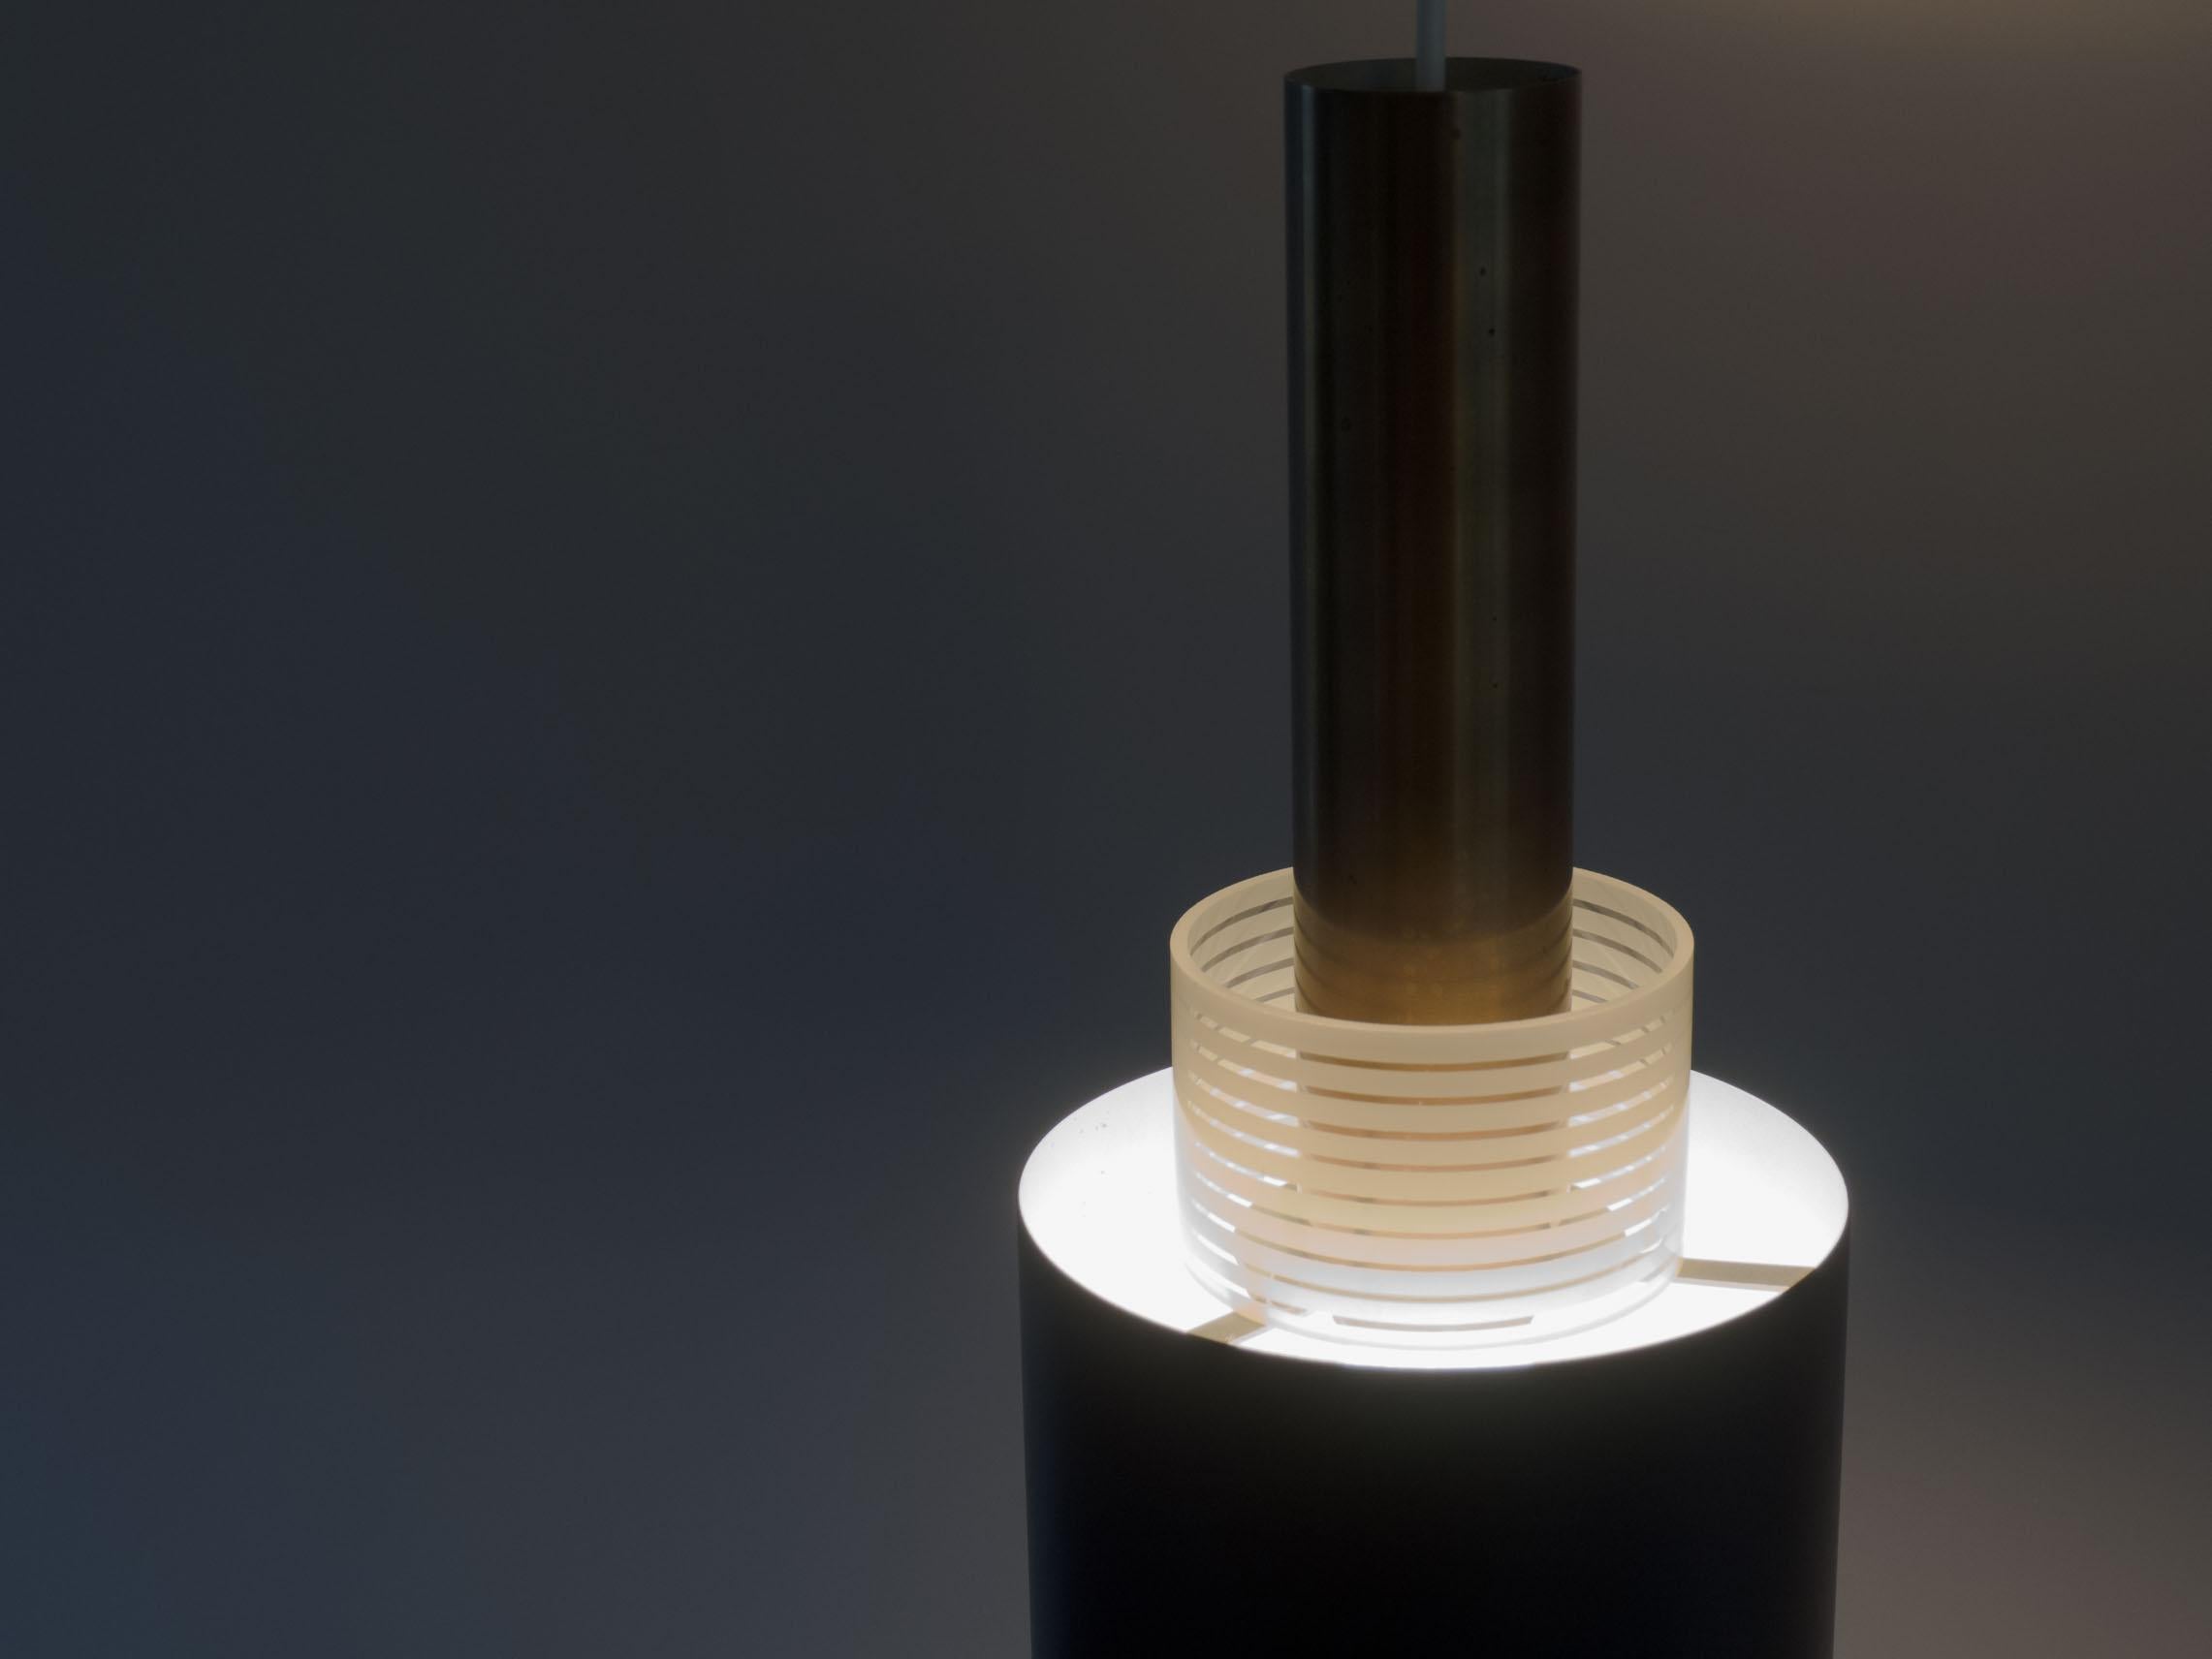 Extraordinaire lampe suspendue au design danois.

Cette lampe se compose d'un cône en laiton, d'un anneau en verre rayé et d'un abat-jour en métal laqué noir. La combinaison des matériaux et surtout le verre rayé donnent un bel aspect à la lumière